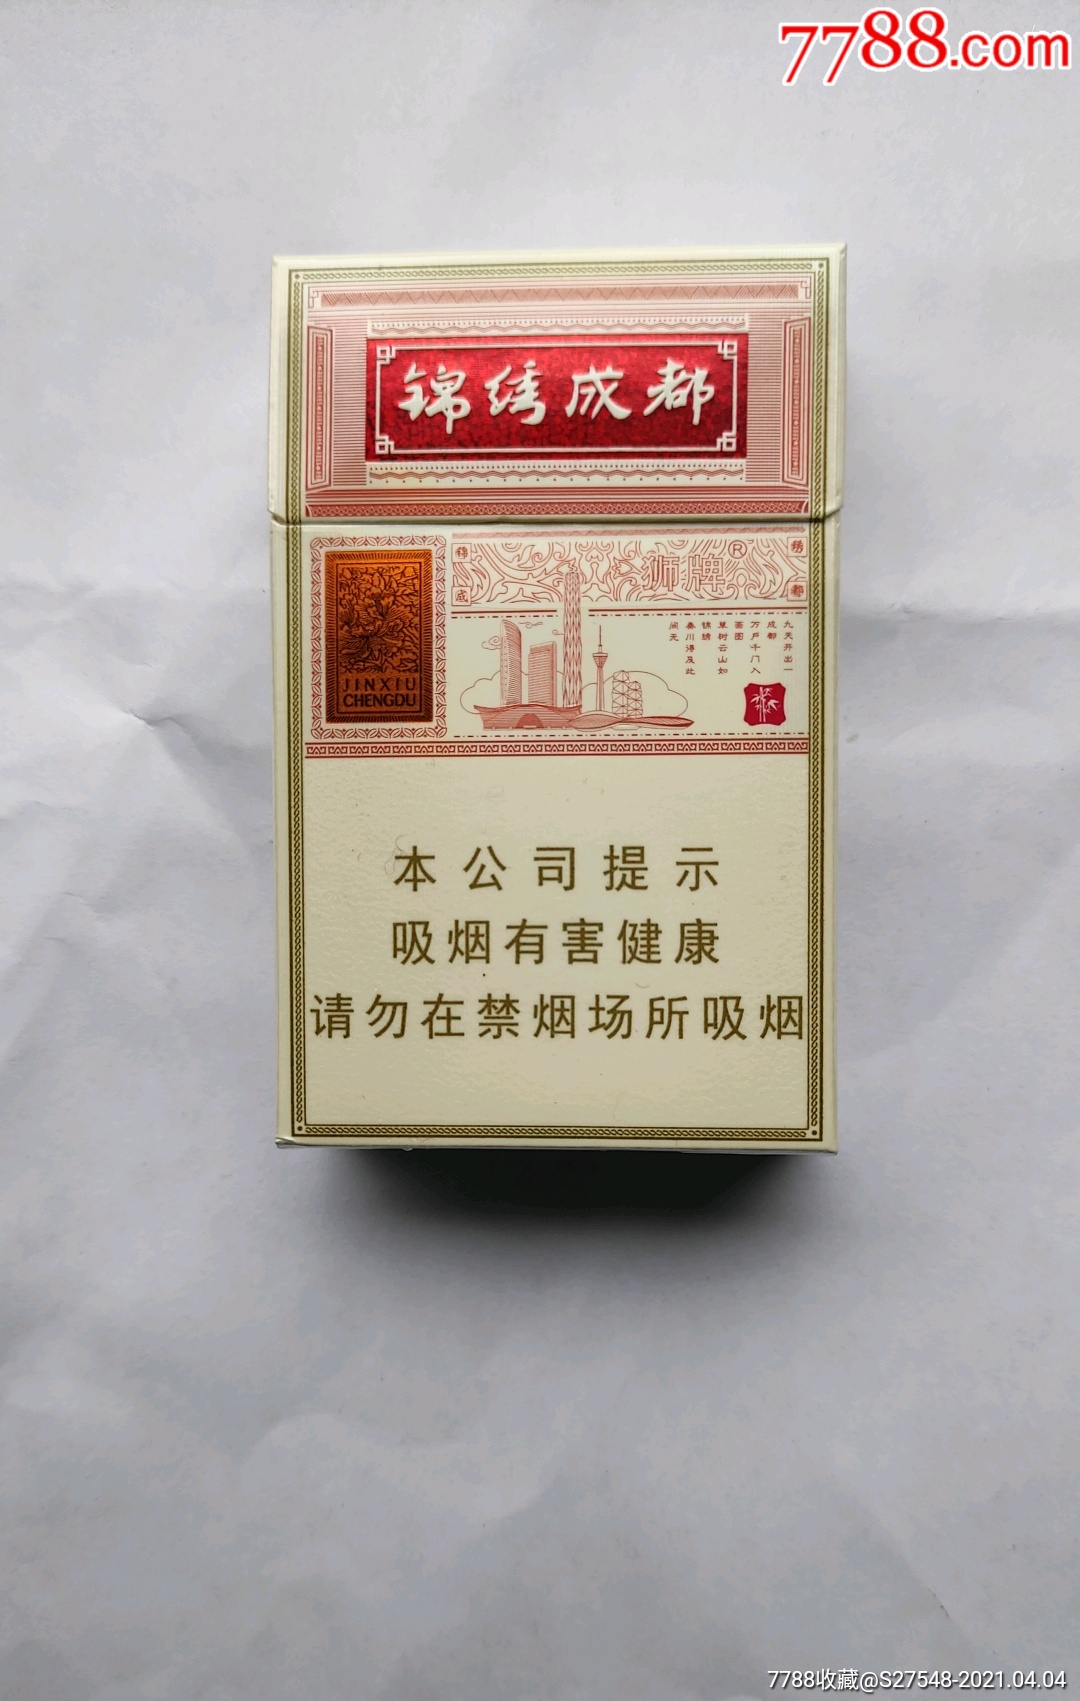 锦绣成都-价格:1.0000元-se79331109-烟标/烟盒-零售